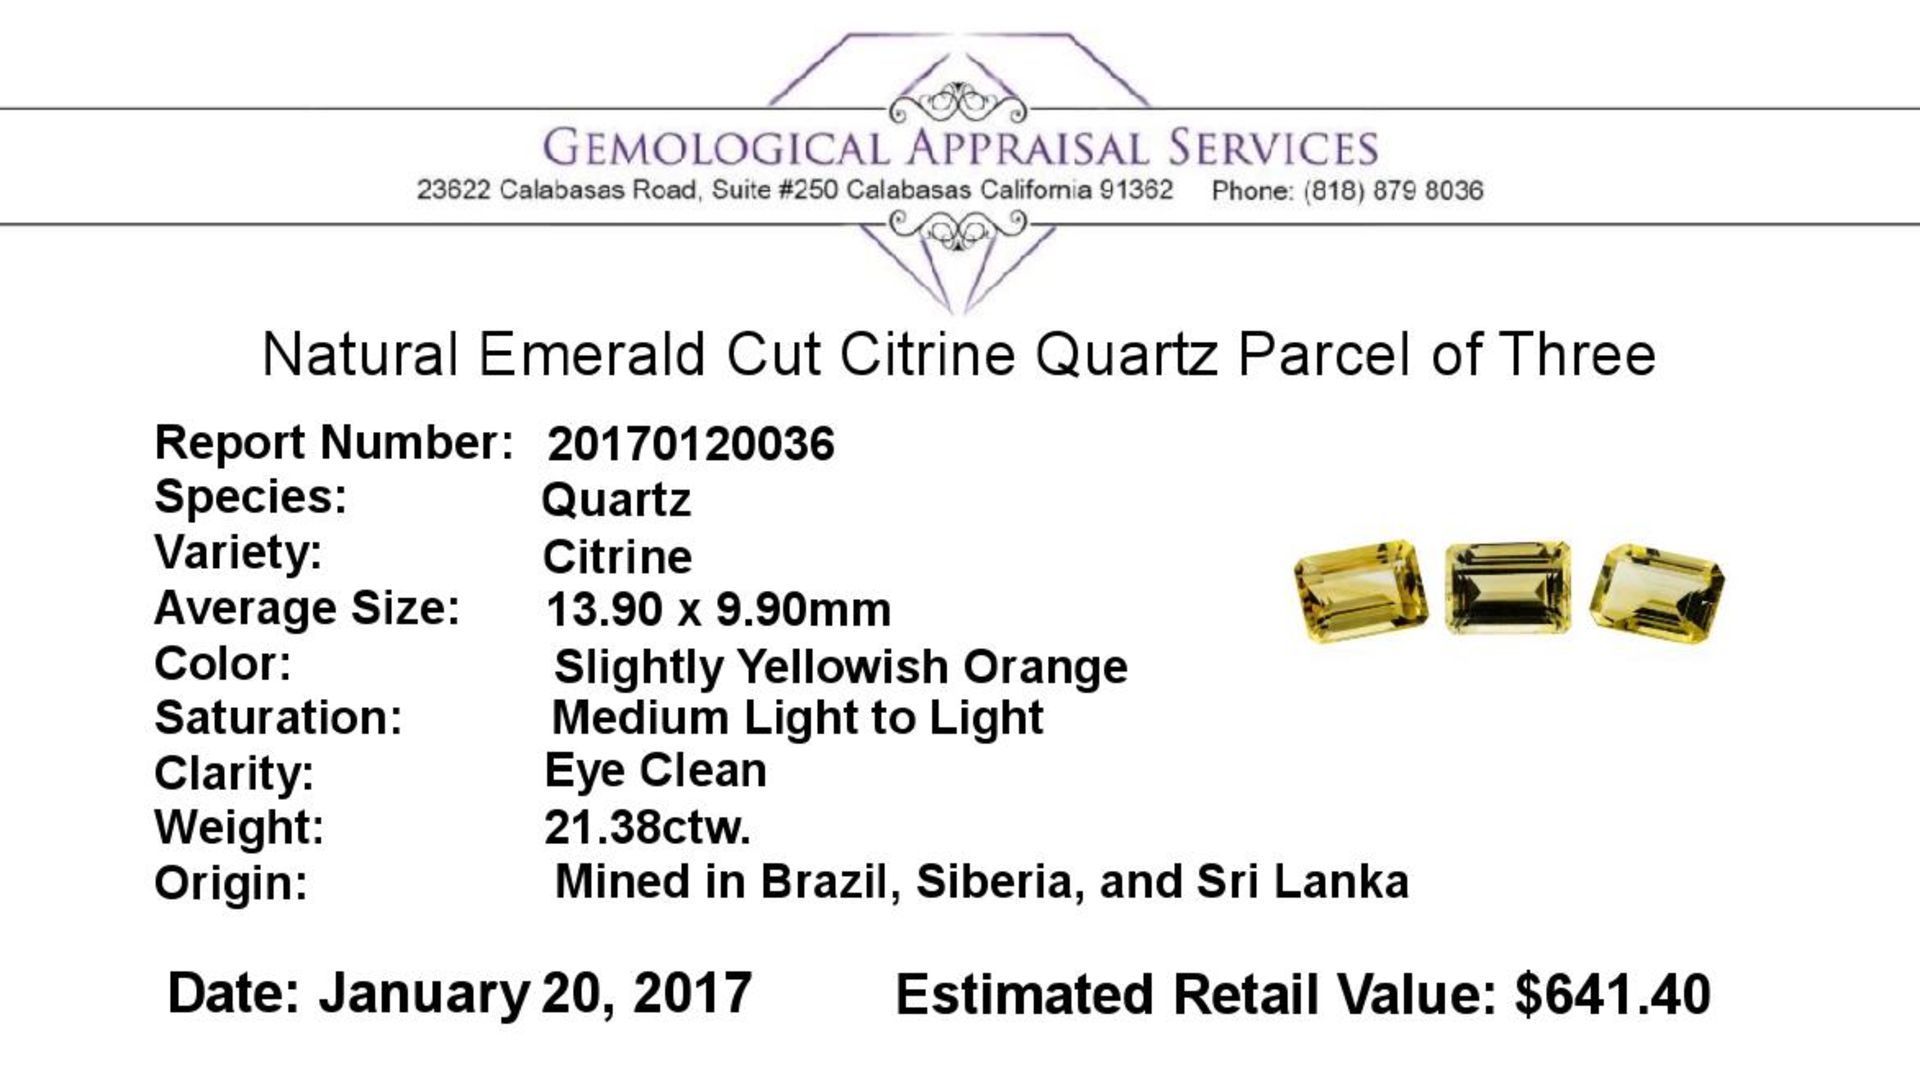 21.38 ctw.Natural Emerald Cut Citrine Quartz Parcel of Three - Image 3 of 3